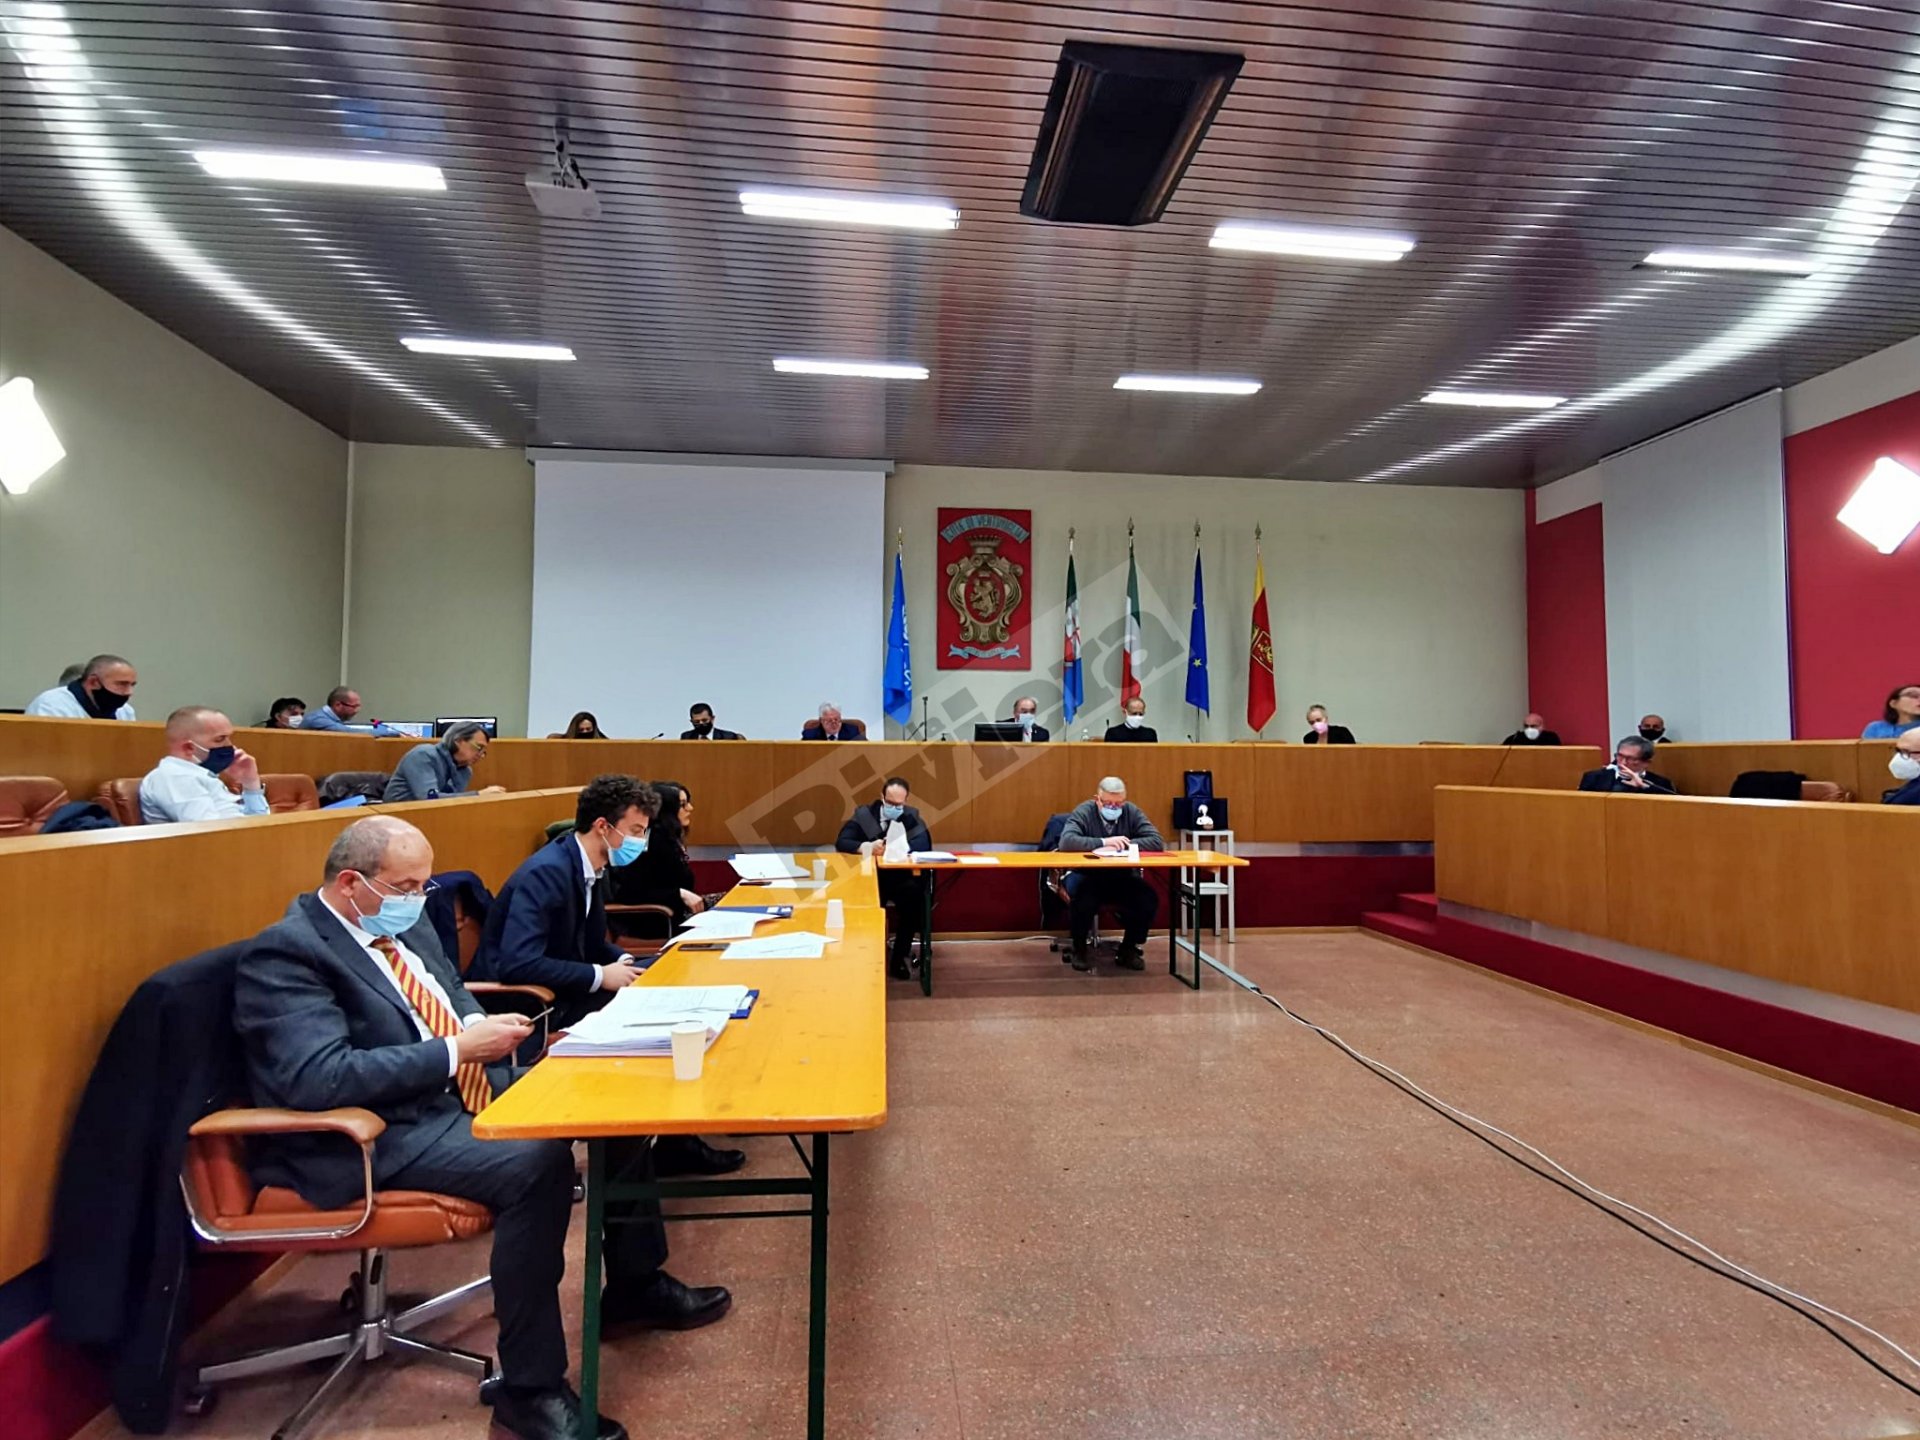 Consiglio comunale Ventimiglia Scullino 18 dicembre 2020 generica